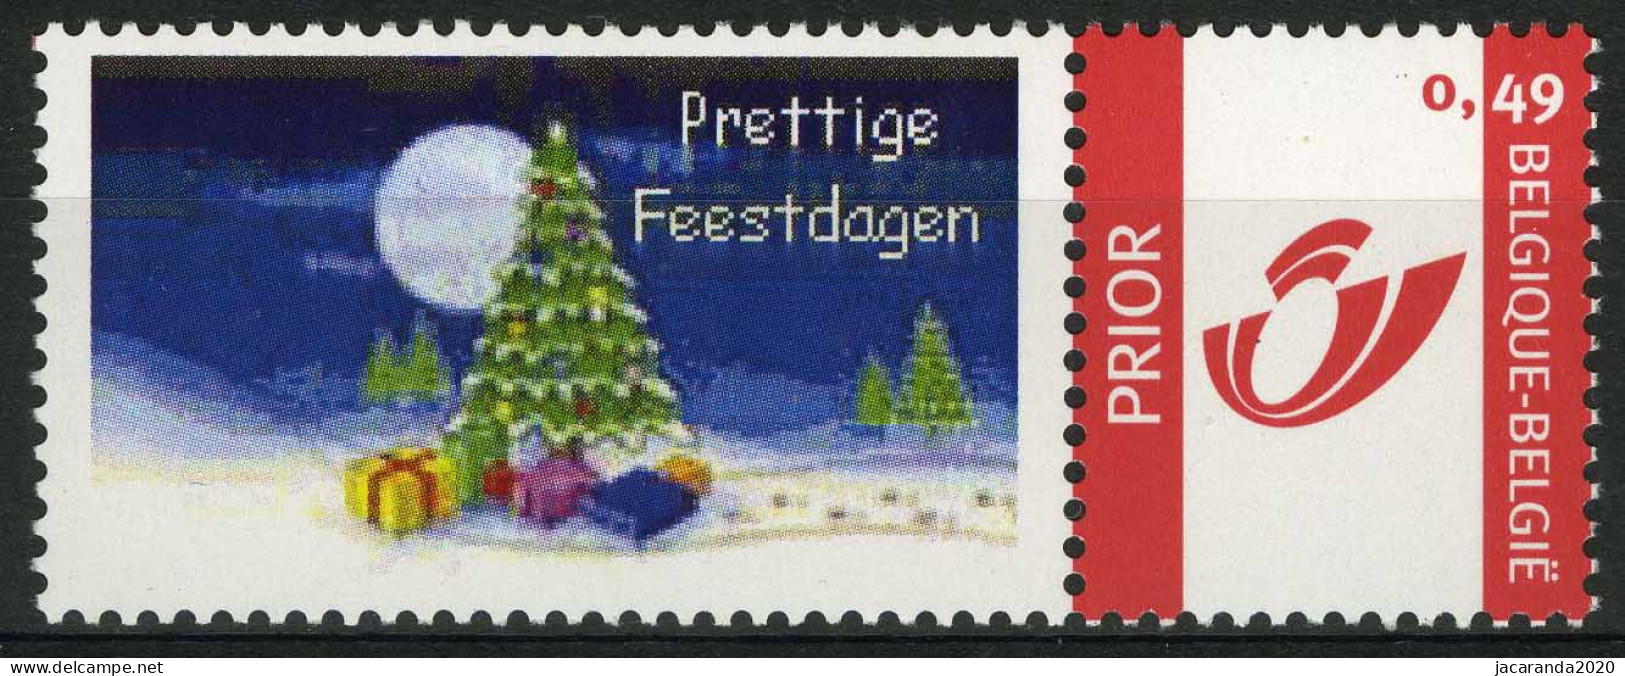 België 3183 - Duostamp - Prettige Feestdagen - Kerstboom - Postfris